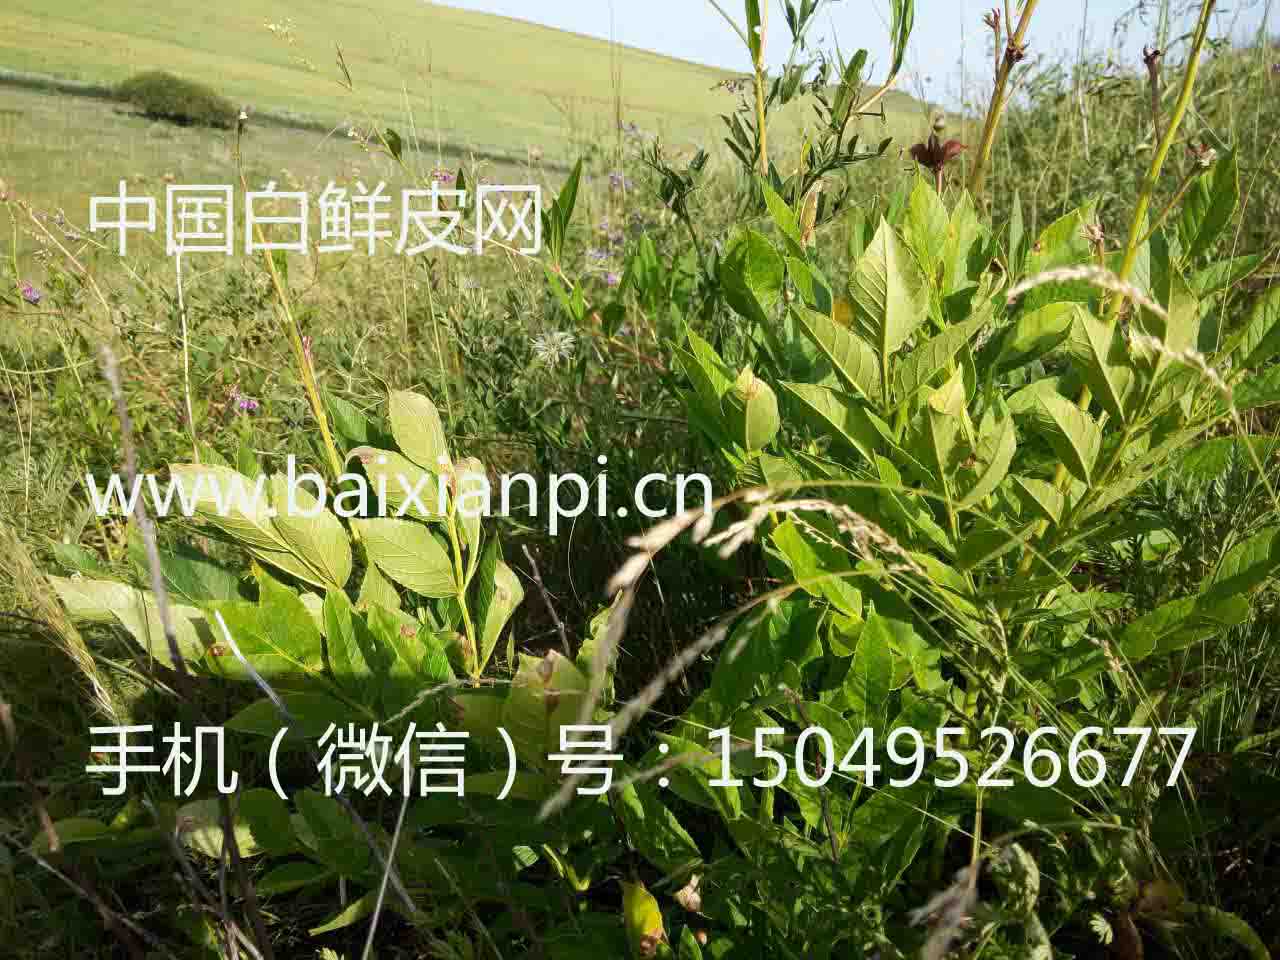 中国白鲜皮网 内蒙古呼伦贝尔，是国内最多的野生白鲜皮种子产地。